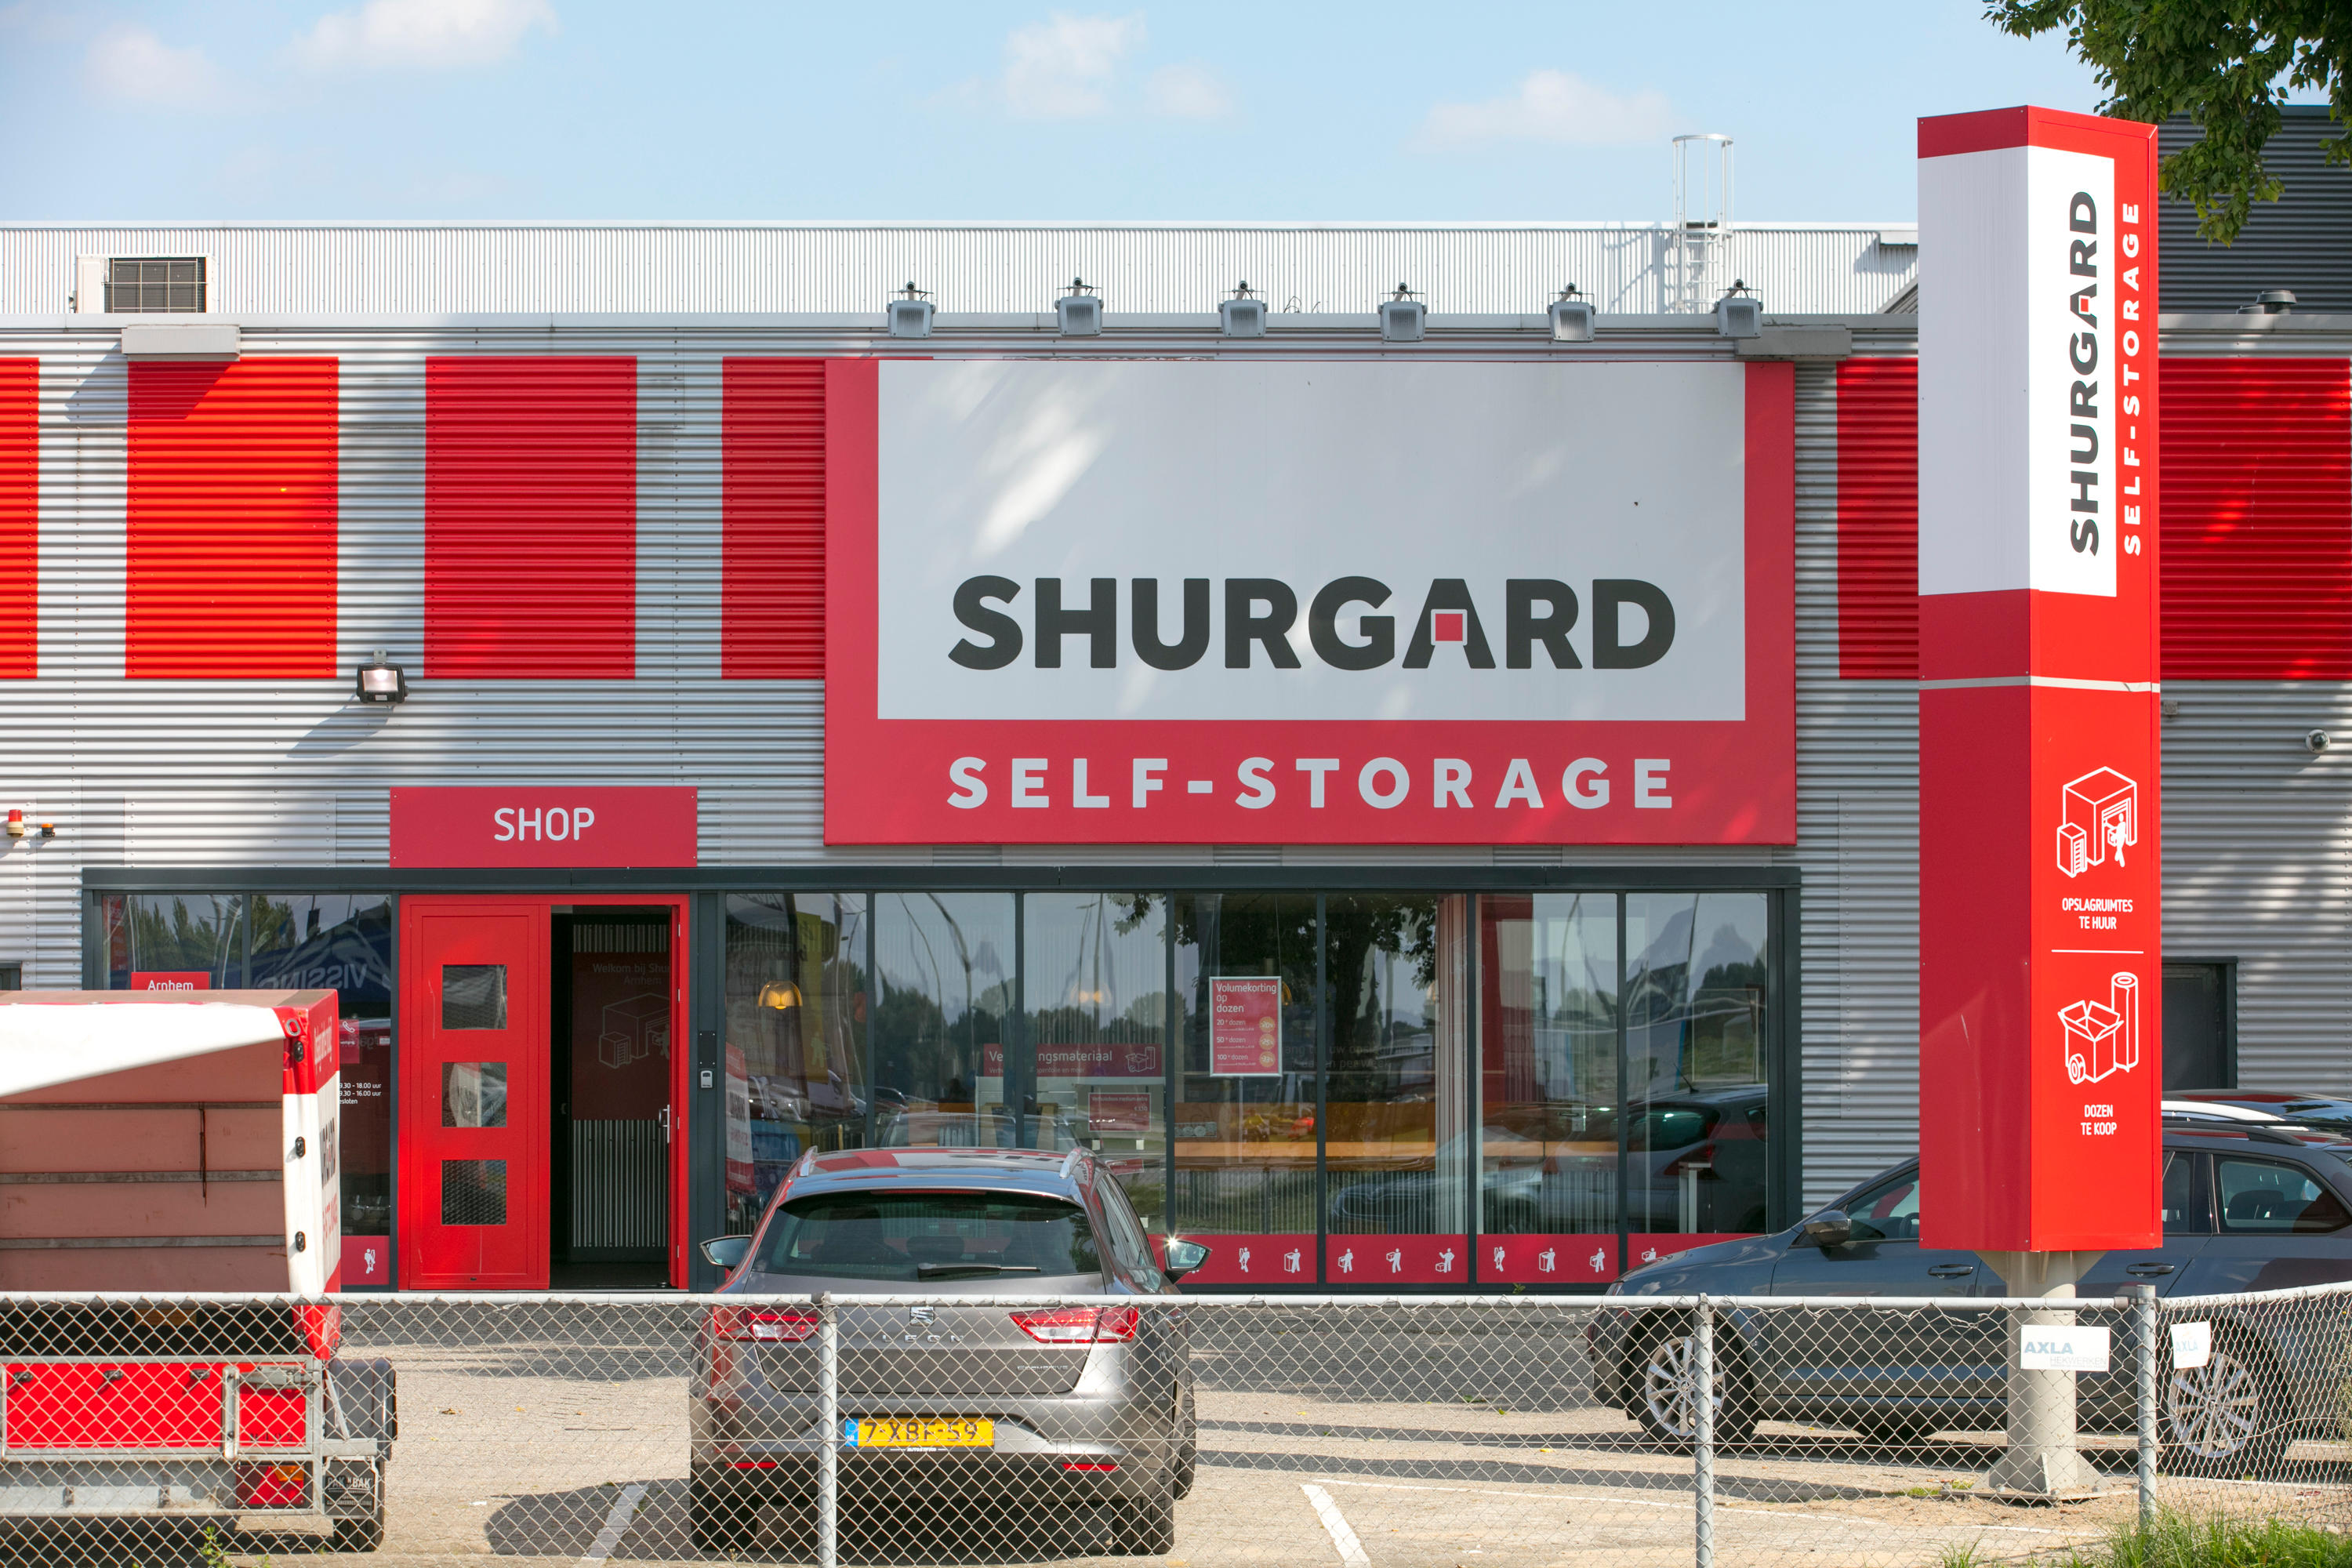 Shurgard Self Storage Arnhem Arnhem 026 445 2983